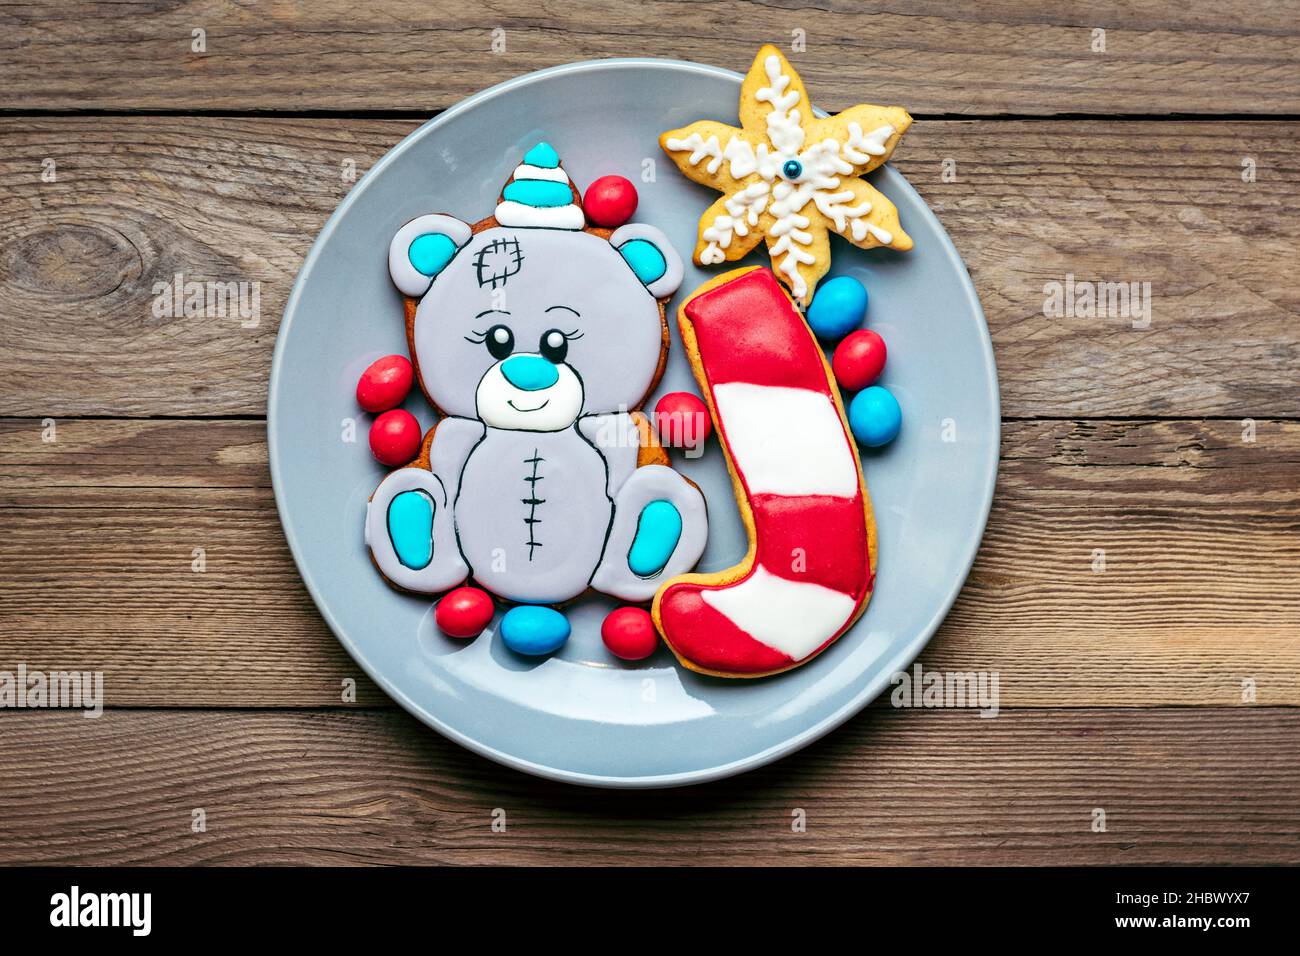 Biscotti di pan di zenzero decorati con glassa a forma di orso in cappello, lecca lecca, fiocchi di neve sul piatto su sfondo rosso Vista dall'alto piatto posare le delizie di Natale Foto Stock